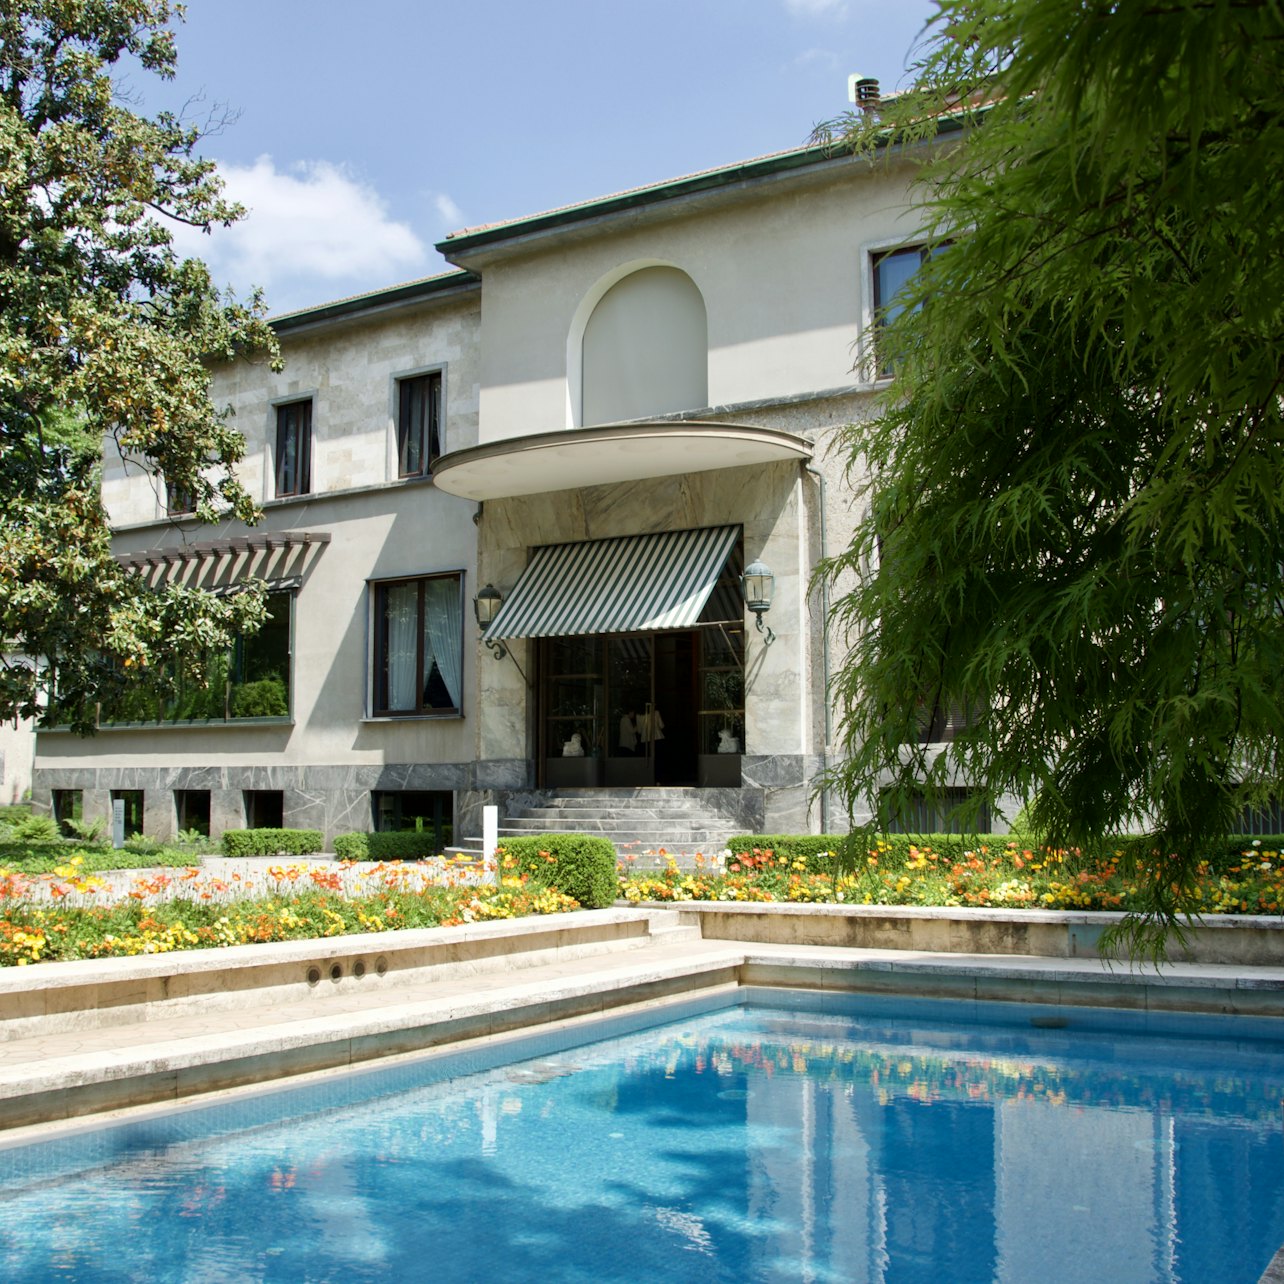 Villa Necchi Campiglio - Alloggi in Milano